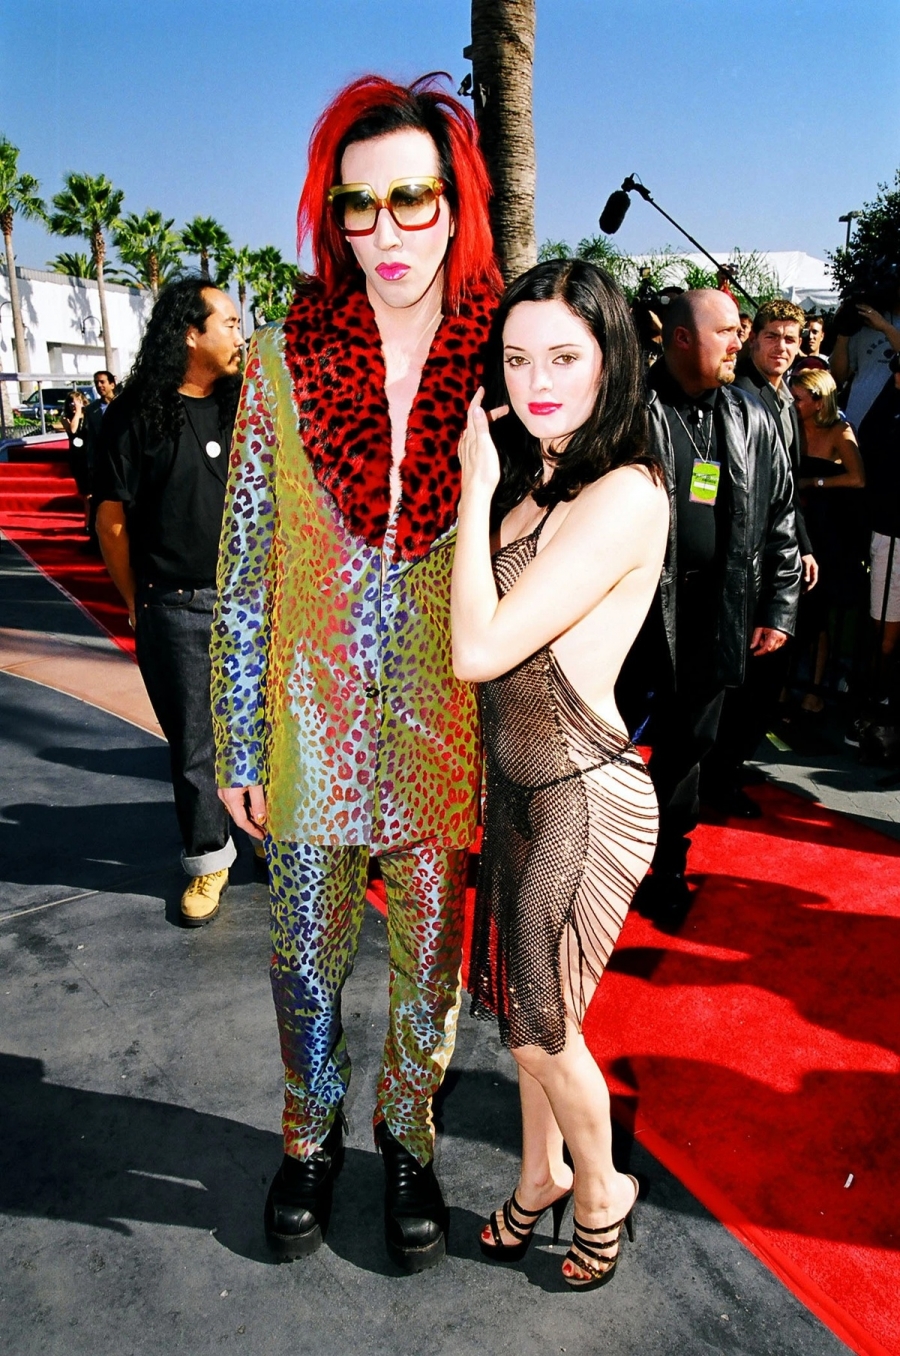 Đứng chung khung hình, Rose McGowan và Marilyn Manson đều nhận sự chỉ trích về trang phục của mình. Trong khi Rose mặc bộ suit da beo loè loạt thì Marilyn lại phản cảm với váy 'đánh cá' với nội y nhỏ xíu, lộ 80% da thịt.